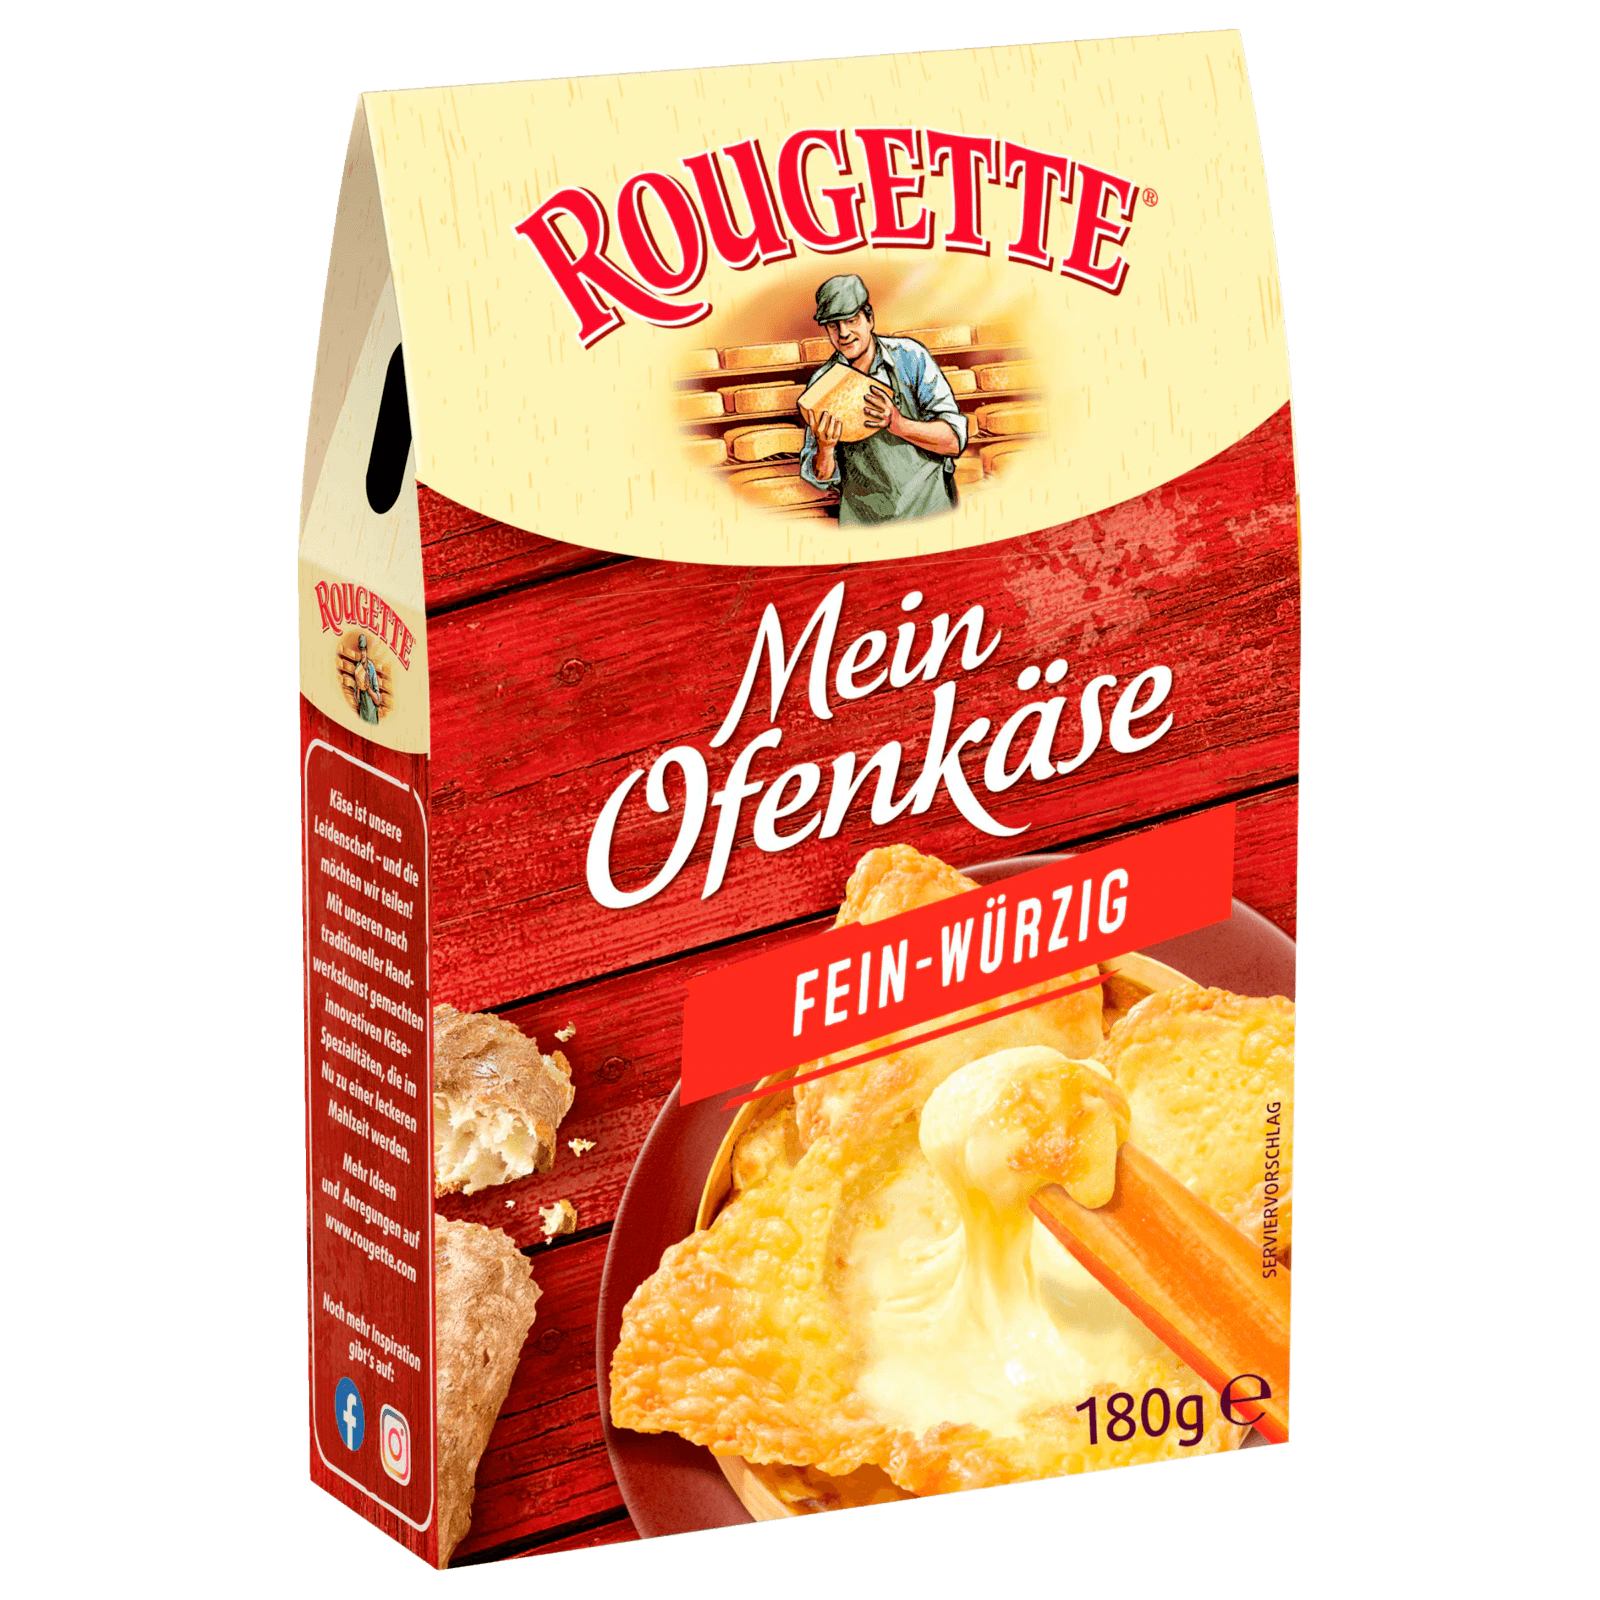 Rougette Der kleine Ofenkäse fein-würzig bestellen! REWE 180g online bei